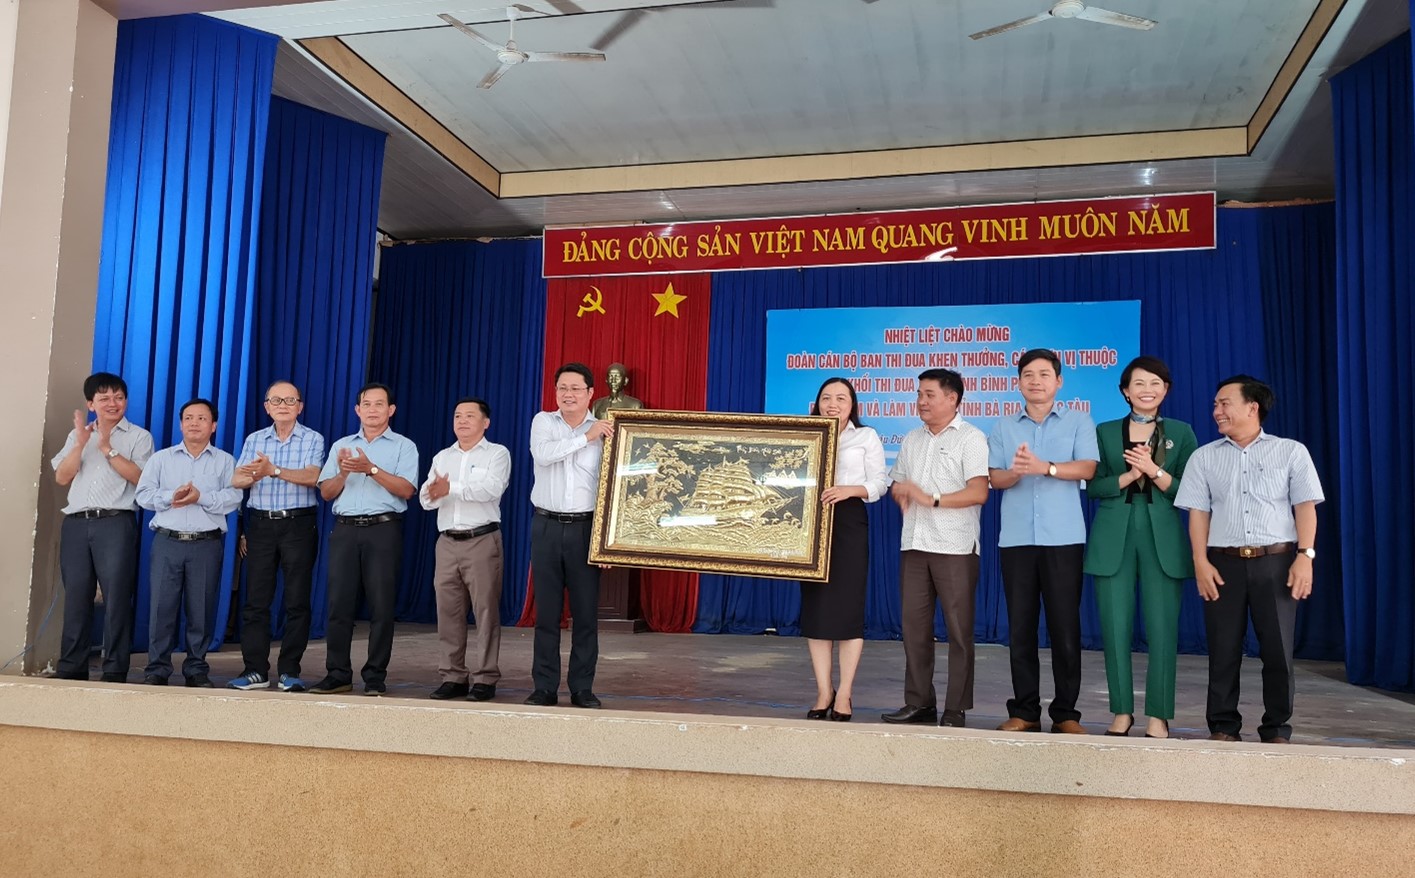 Hội nghị học tập, trao đổi kinh nghiệm về công tác thi đua, khen thưởng với Khối thi đua số 10 tỉnh Bình Phước